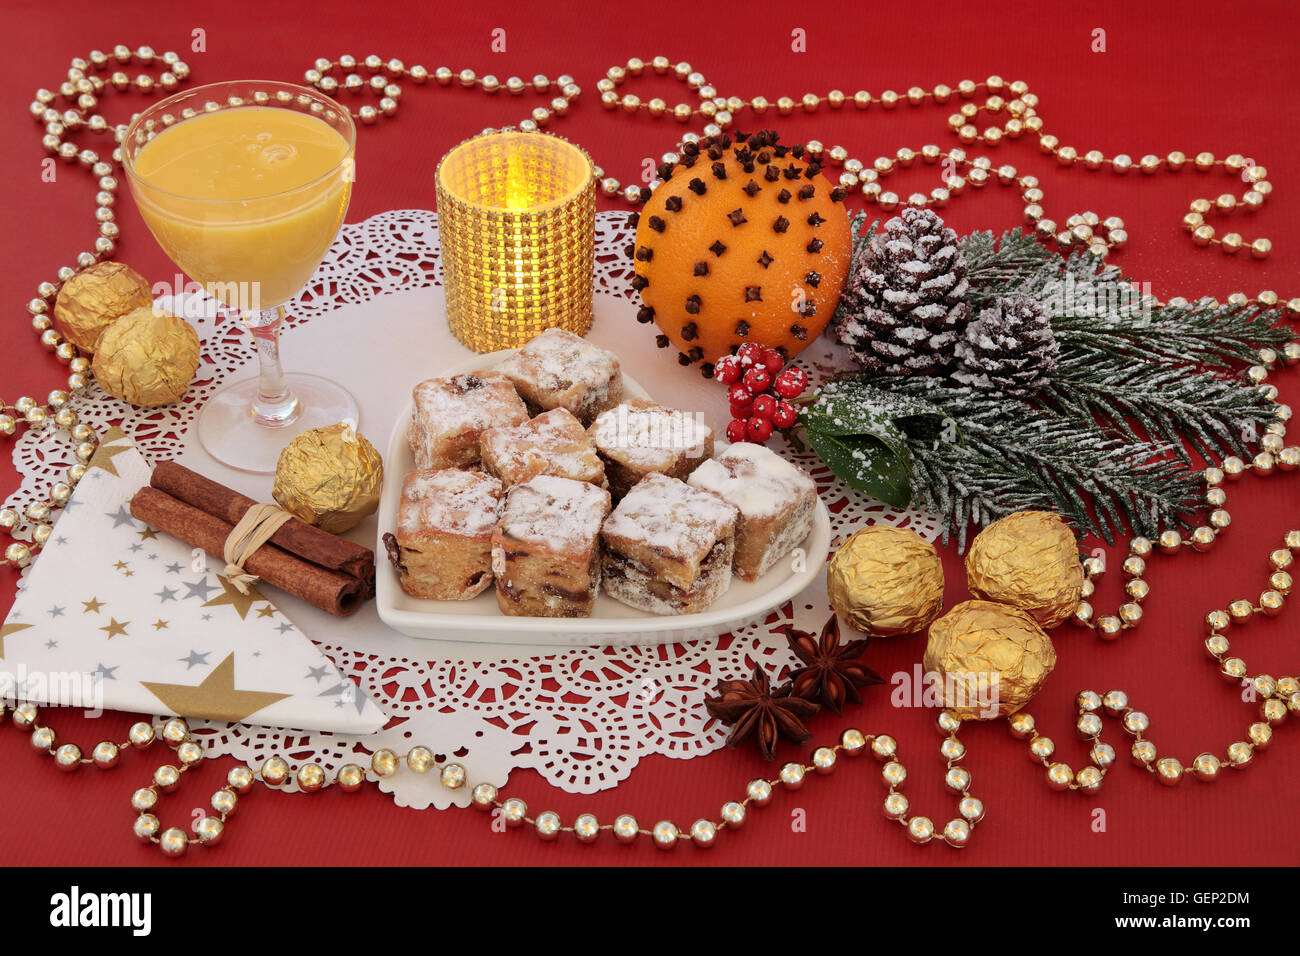 Dolce natalizio del cibo con lo Stollen dolci, uova nog, lamina di cioccolatini incartati, spezie, candela, arancione pomander e decorazioni su un Foto Stock